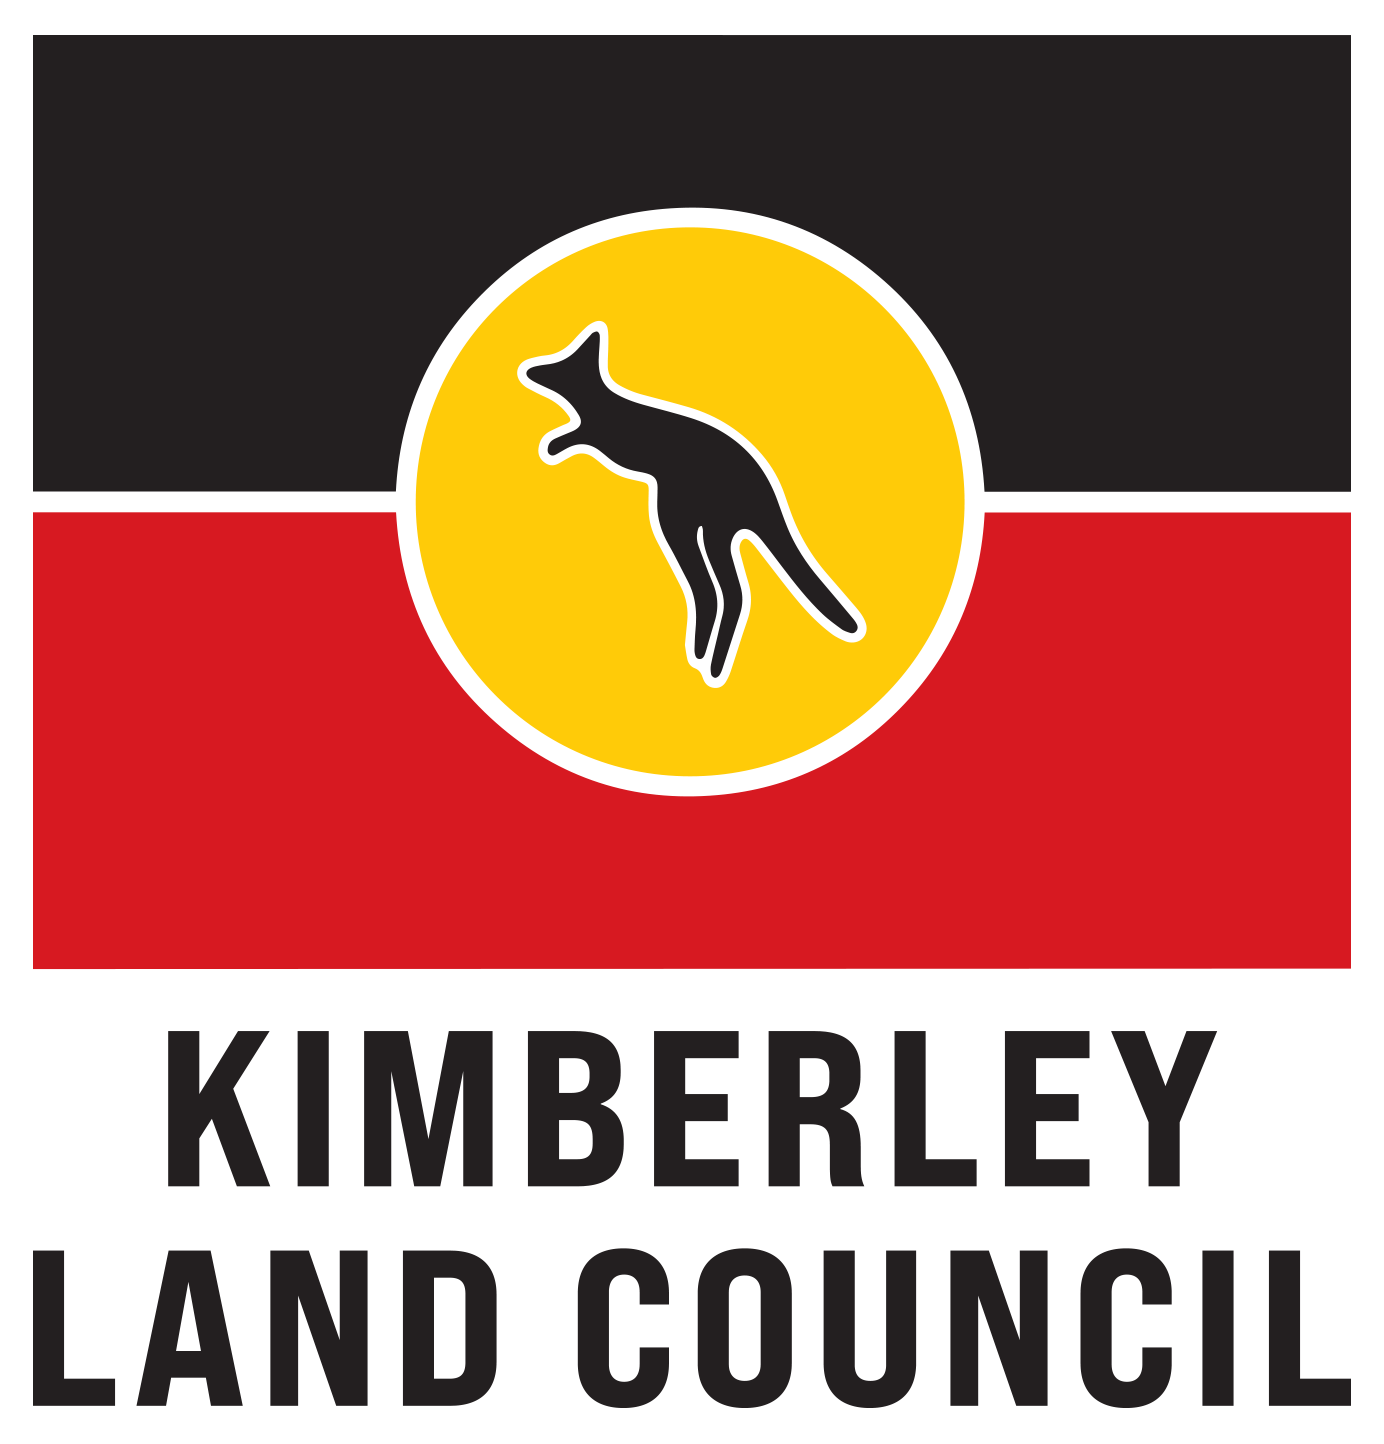 Kimberley Land Council